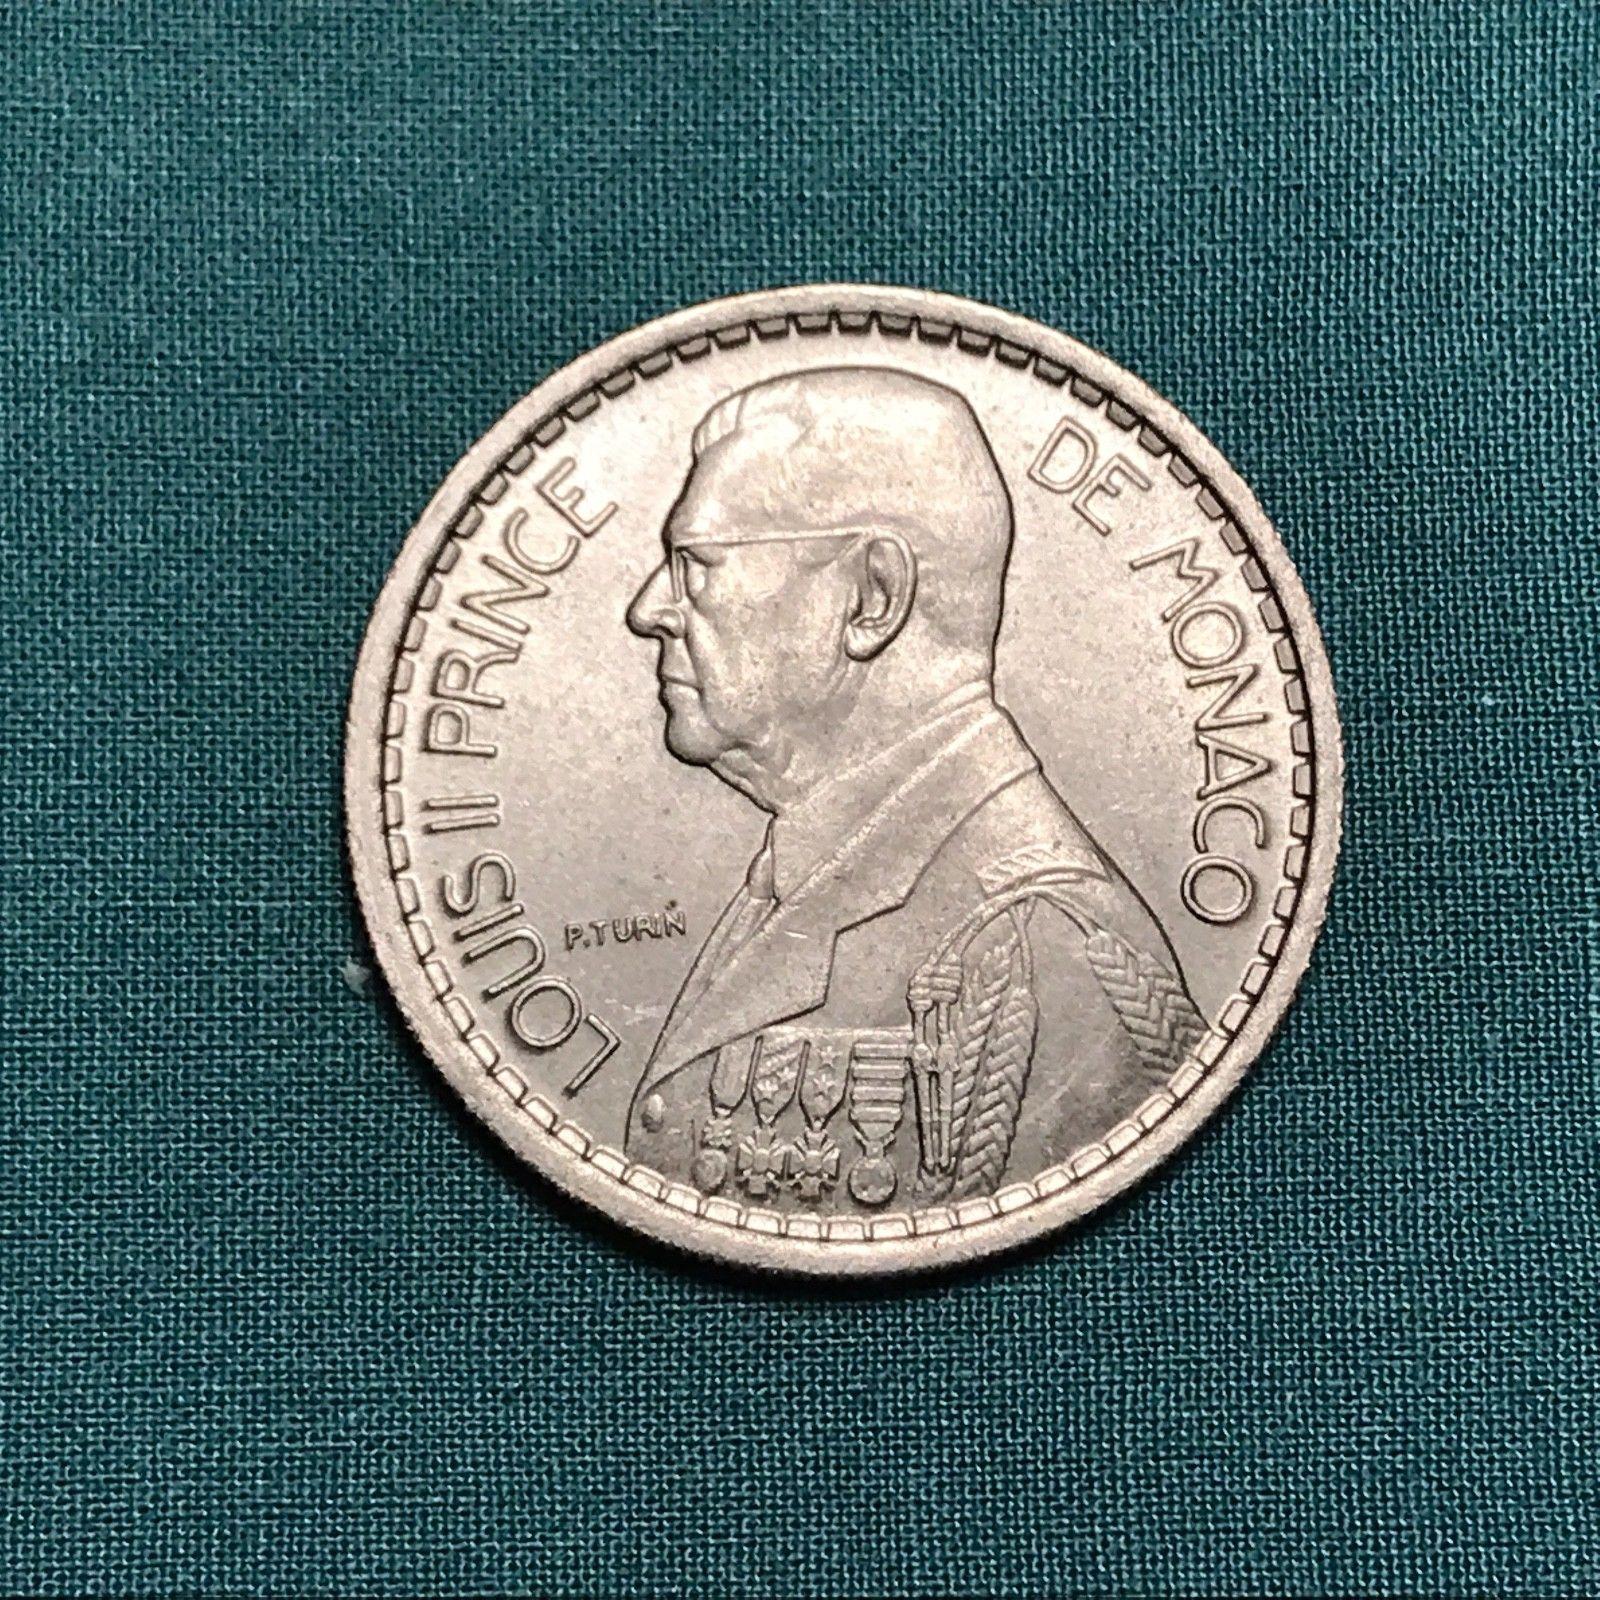 Цена монеты 10 франков (francs) 1946 года Монако: стоимость по аукционам с описанием и фото.